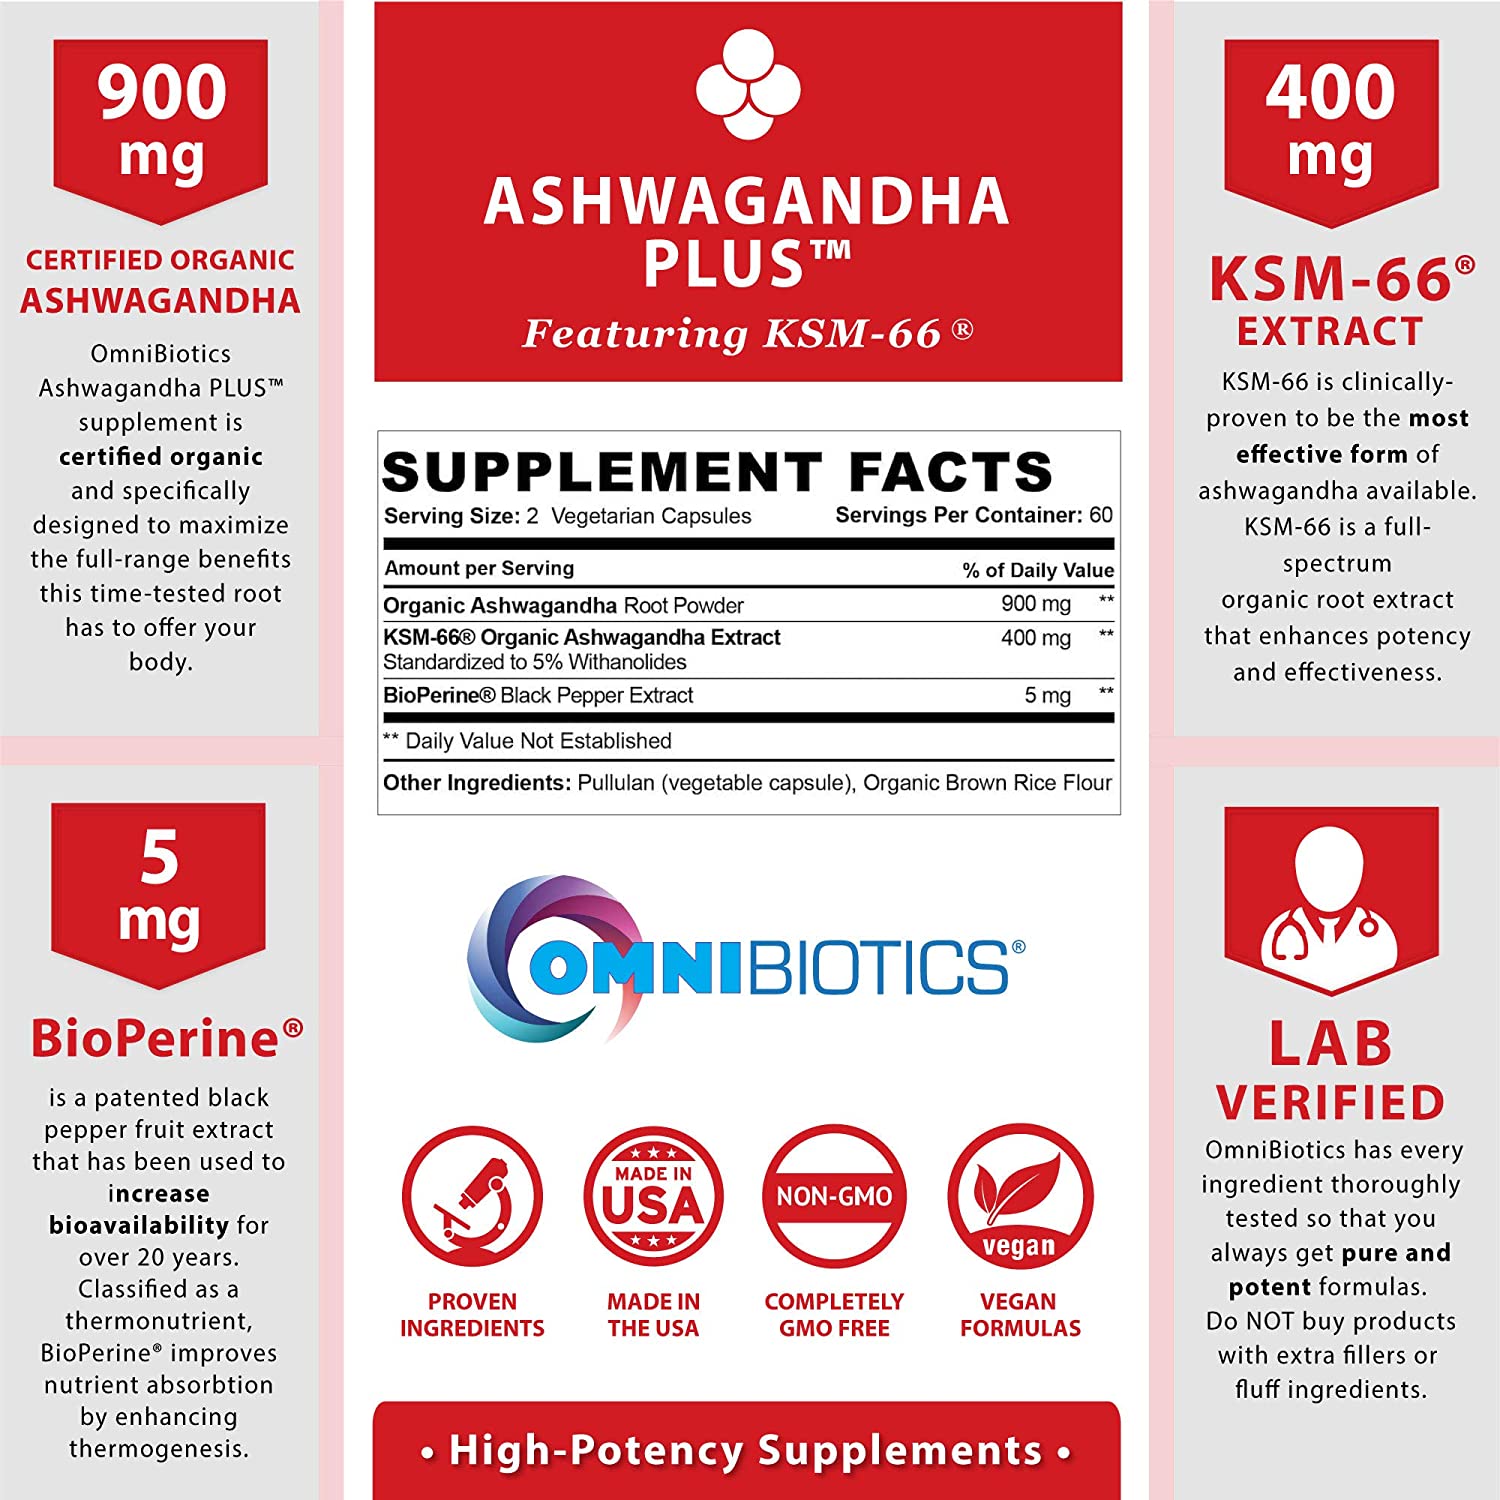 Certified Organic Ashwagandha Plus